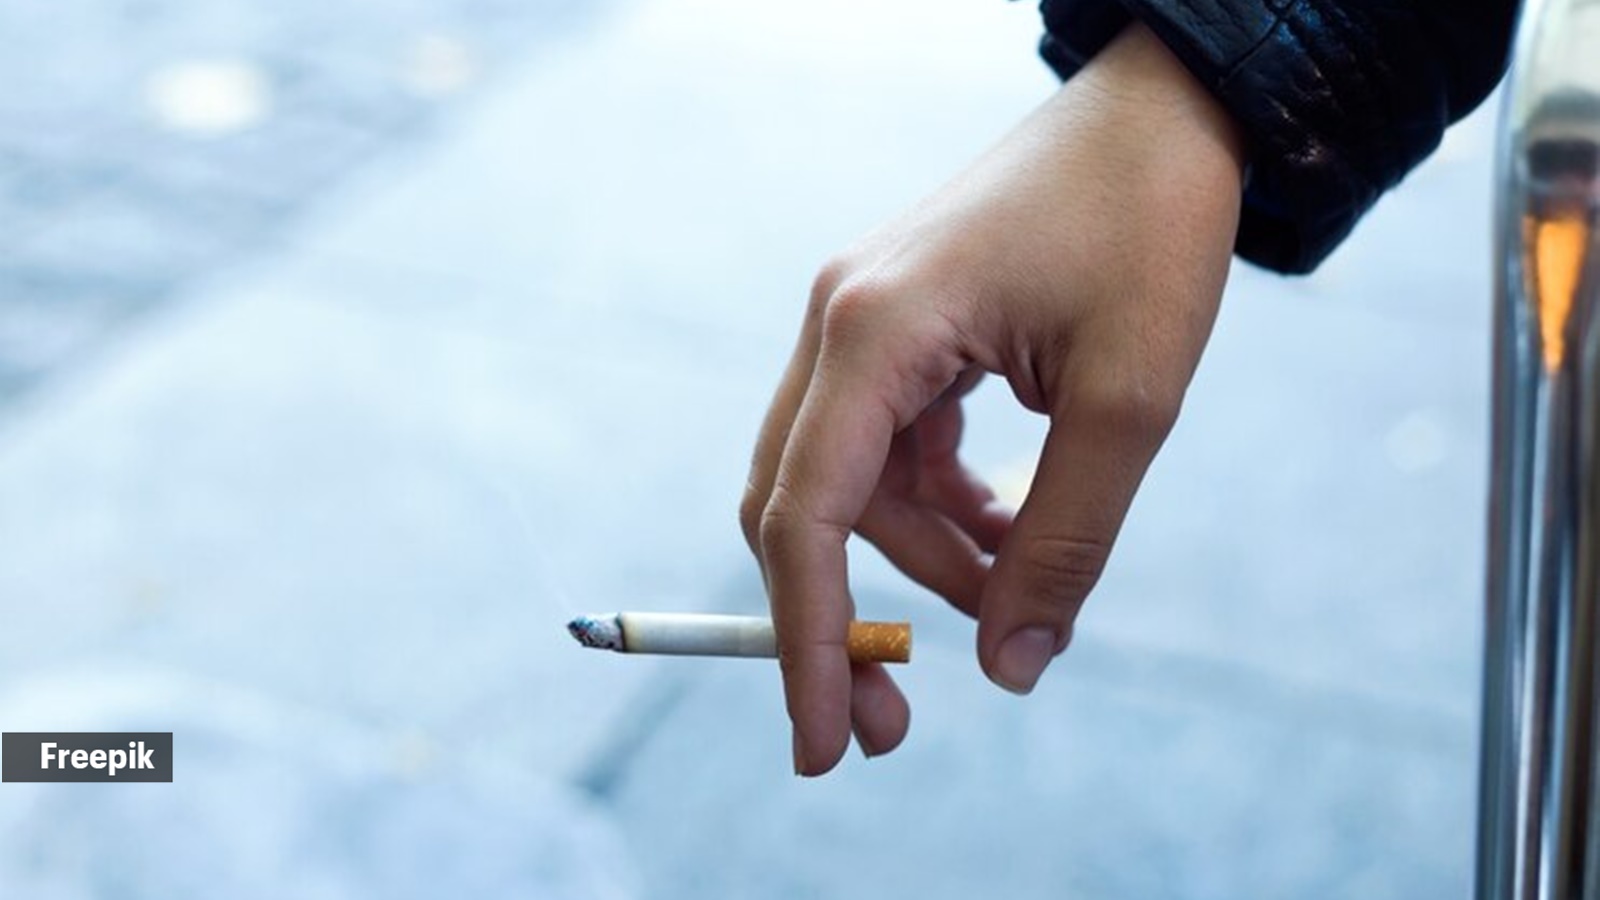 Fumando cigarros.  adolescentes, tabaco